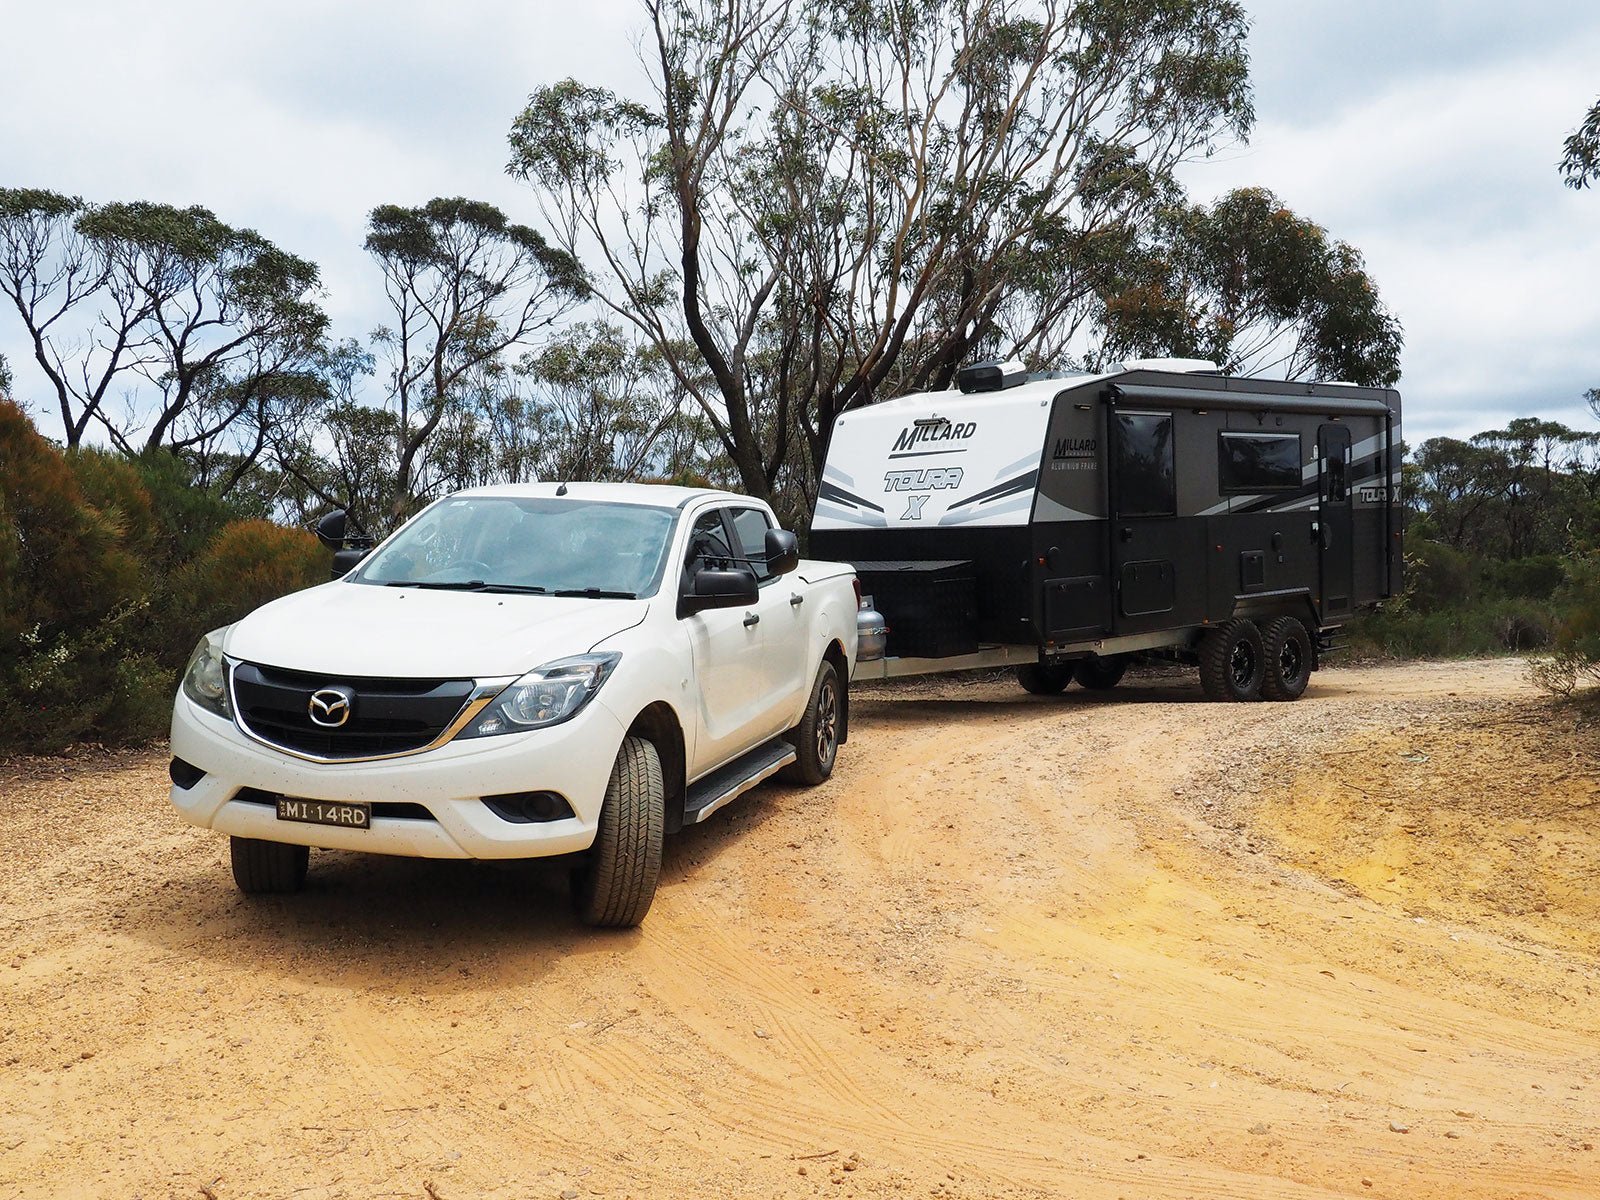 Caravan review: Millard Toura X 19ft 6 Rear Door - Caravan World Australia